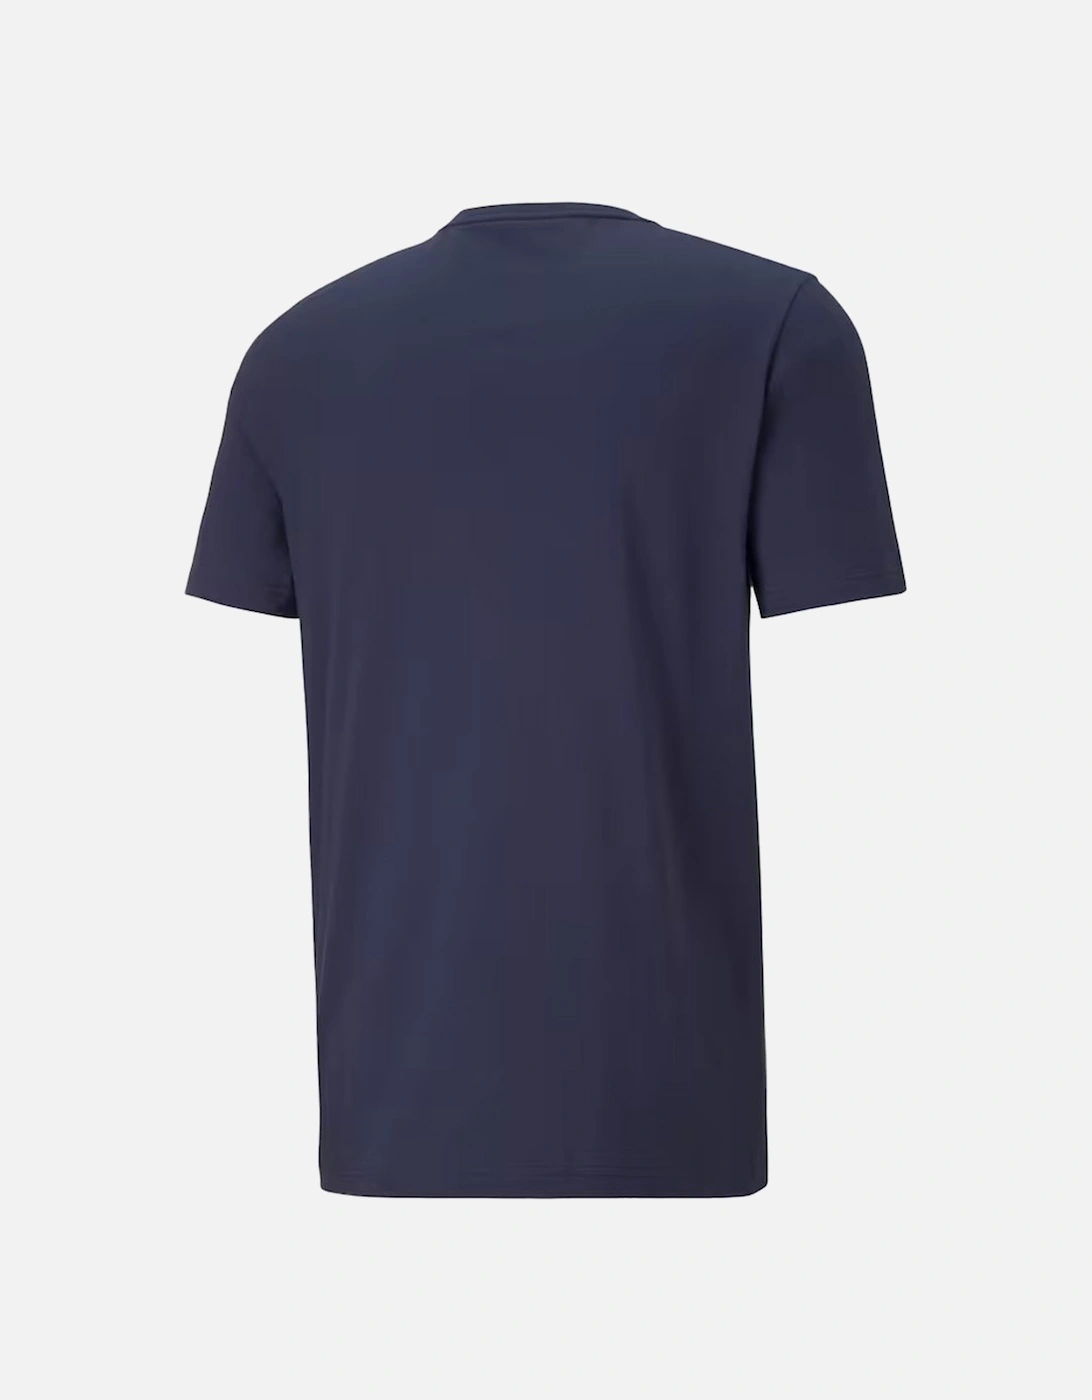 Manchester City Premier League Winners 2023 T-Shirt (Navy)